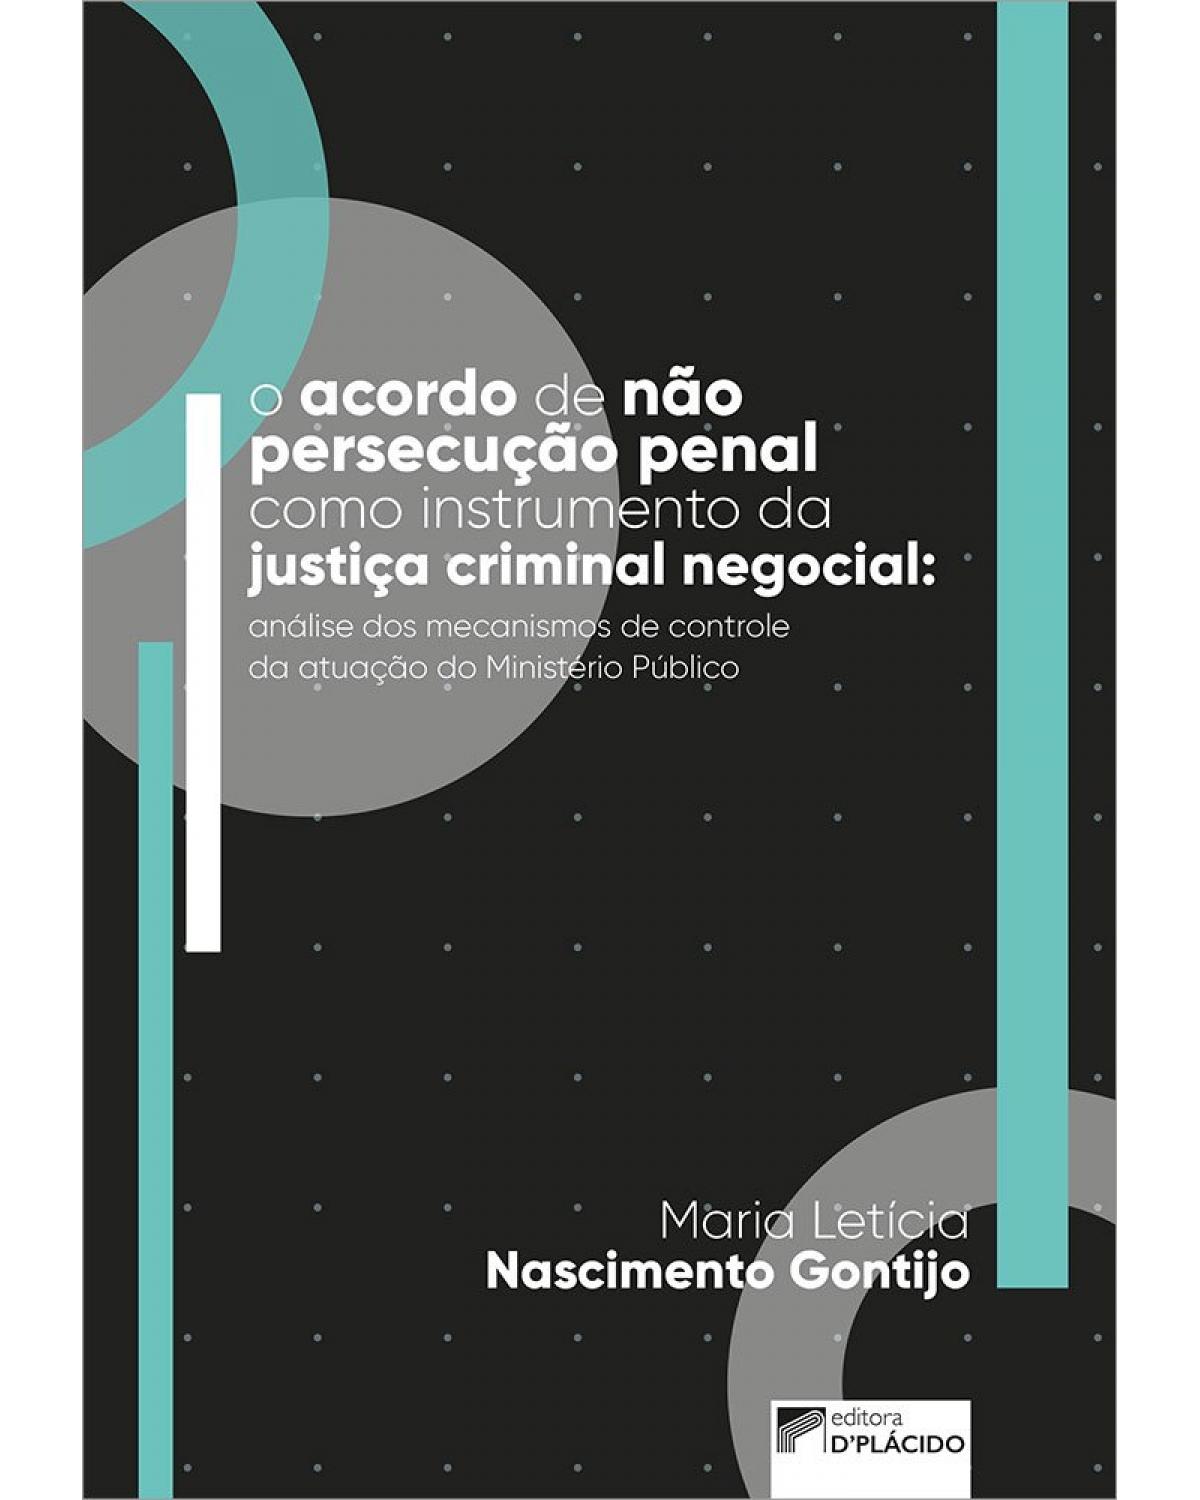 O acordo de não persecução penal como instrumento da justiça criminal negocial - análise dos mecanismos de controle à vontade do Ministério Público - 1ª Edição | 2022